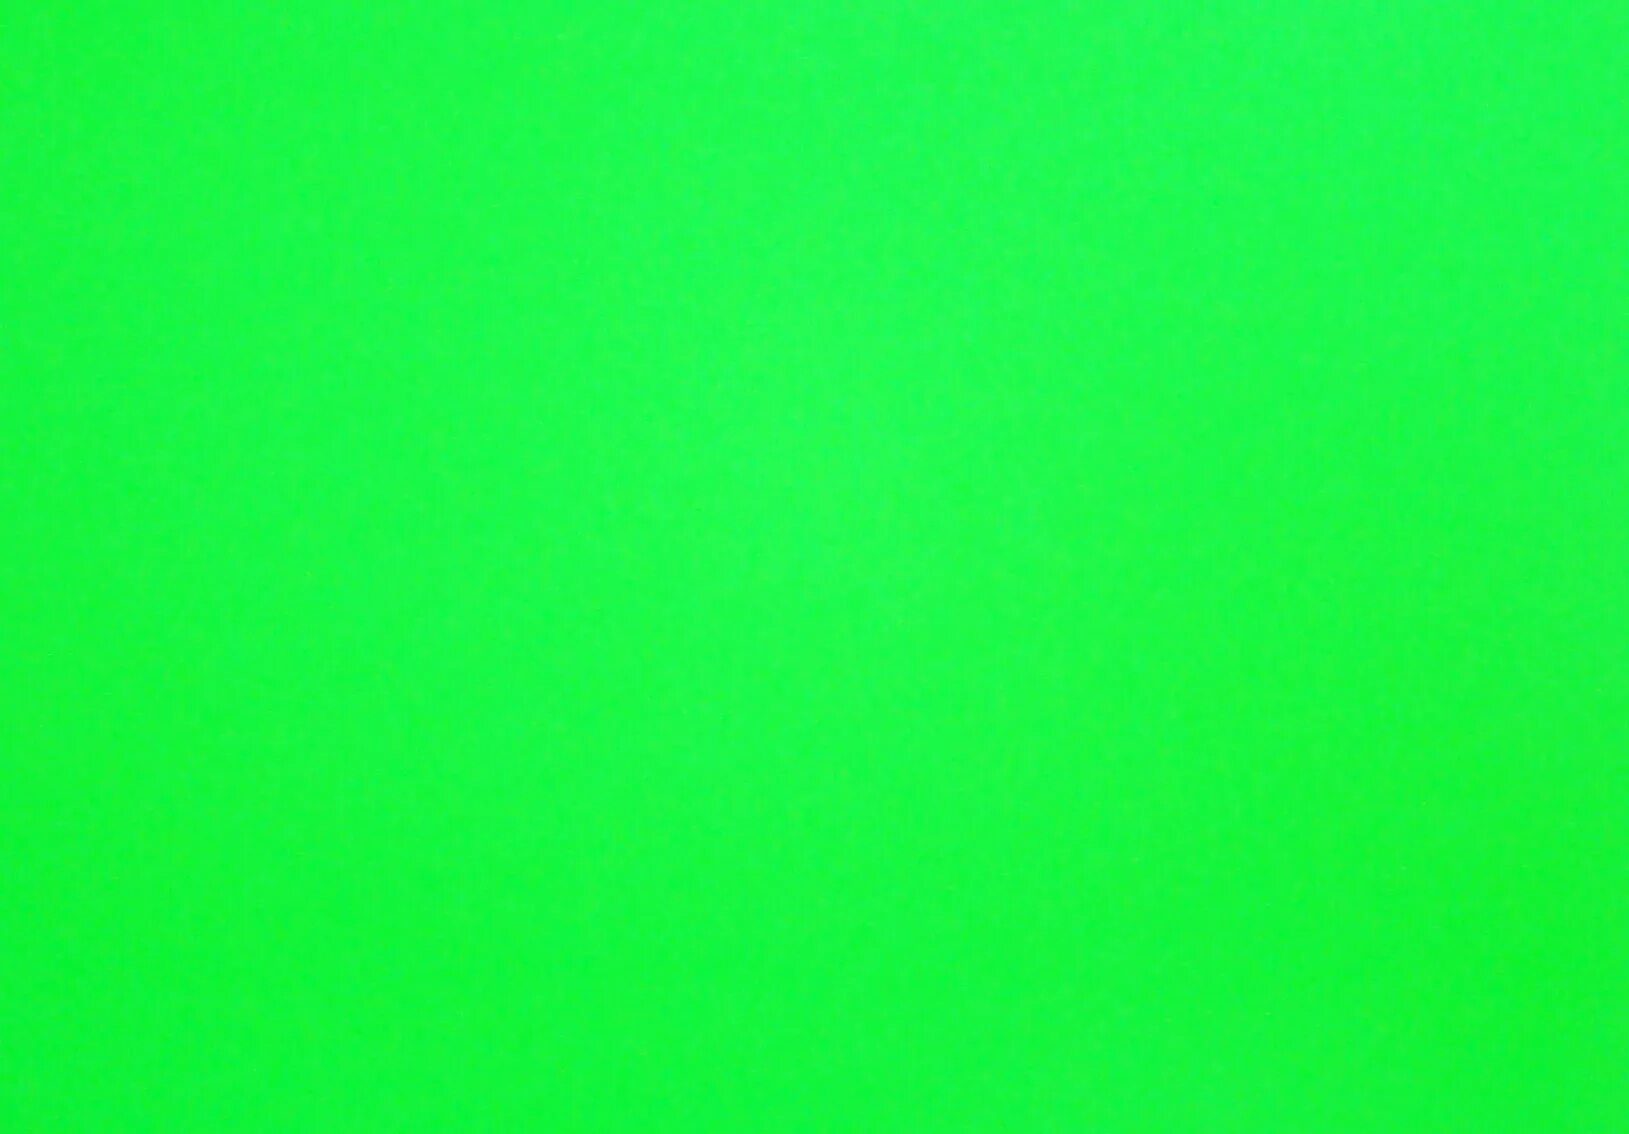 Цвет зеленый лист. Флуоресцентный зеленый. Зеленый лист бумаги. Зеленый цвет бумаги. Цветная бумага зеленого цвета.